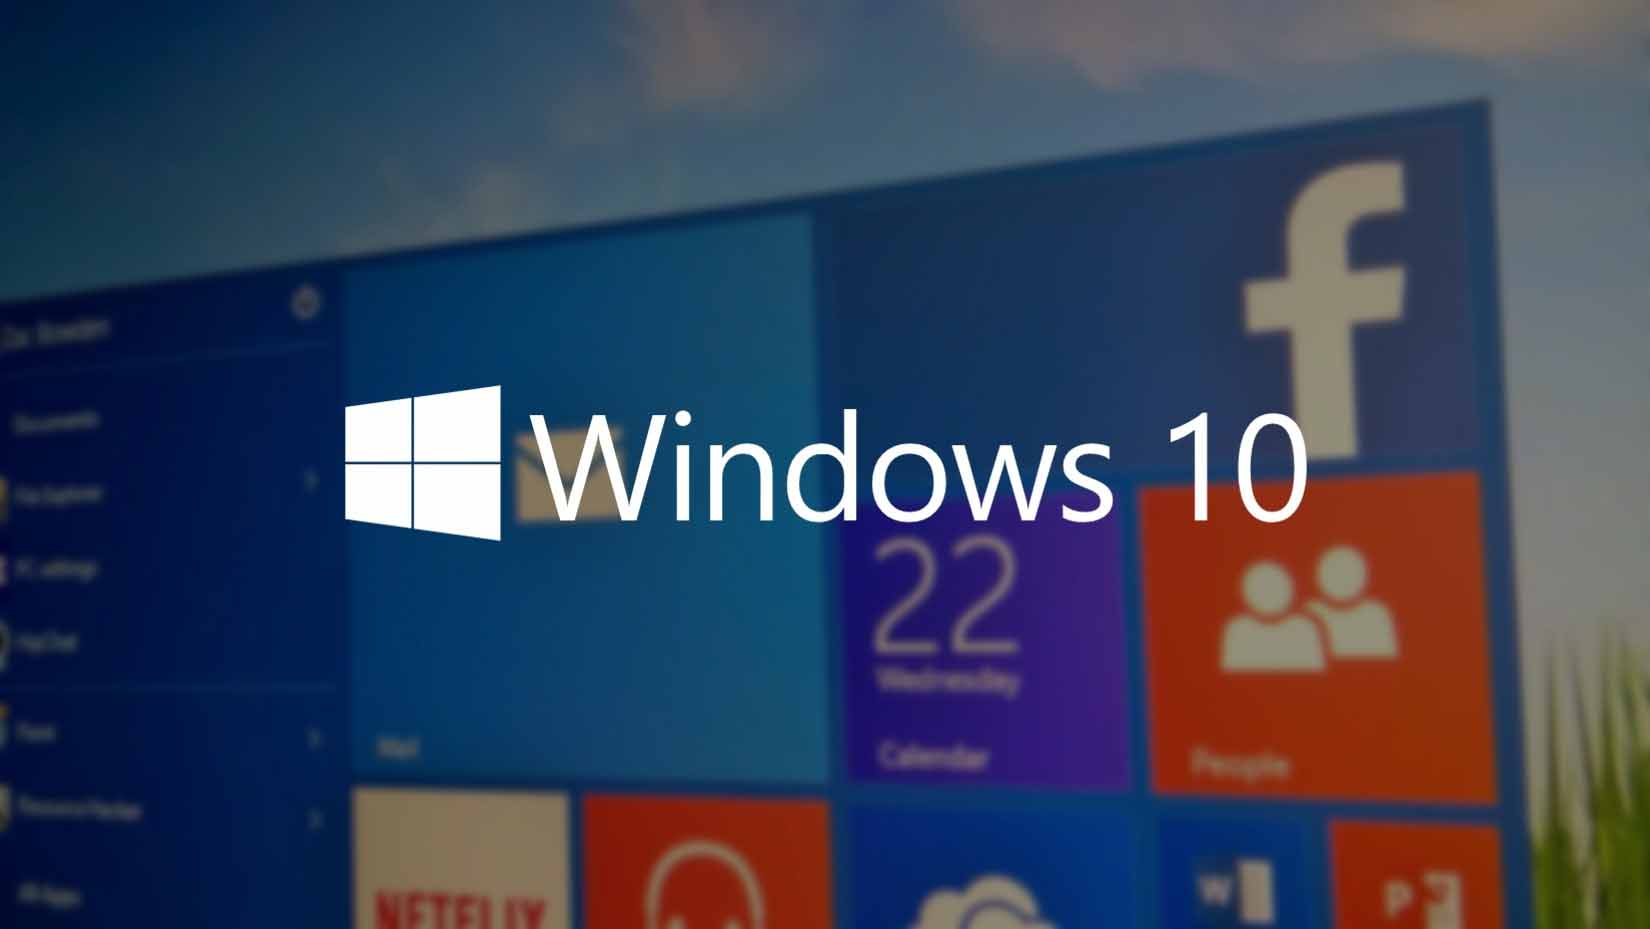      Windows 10?